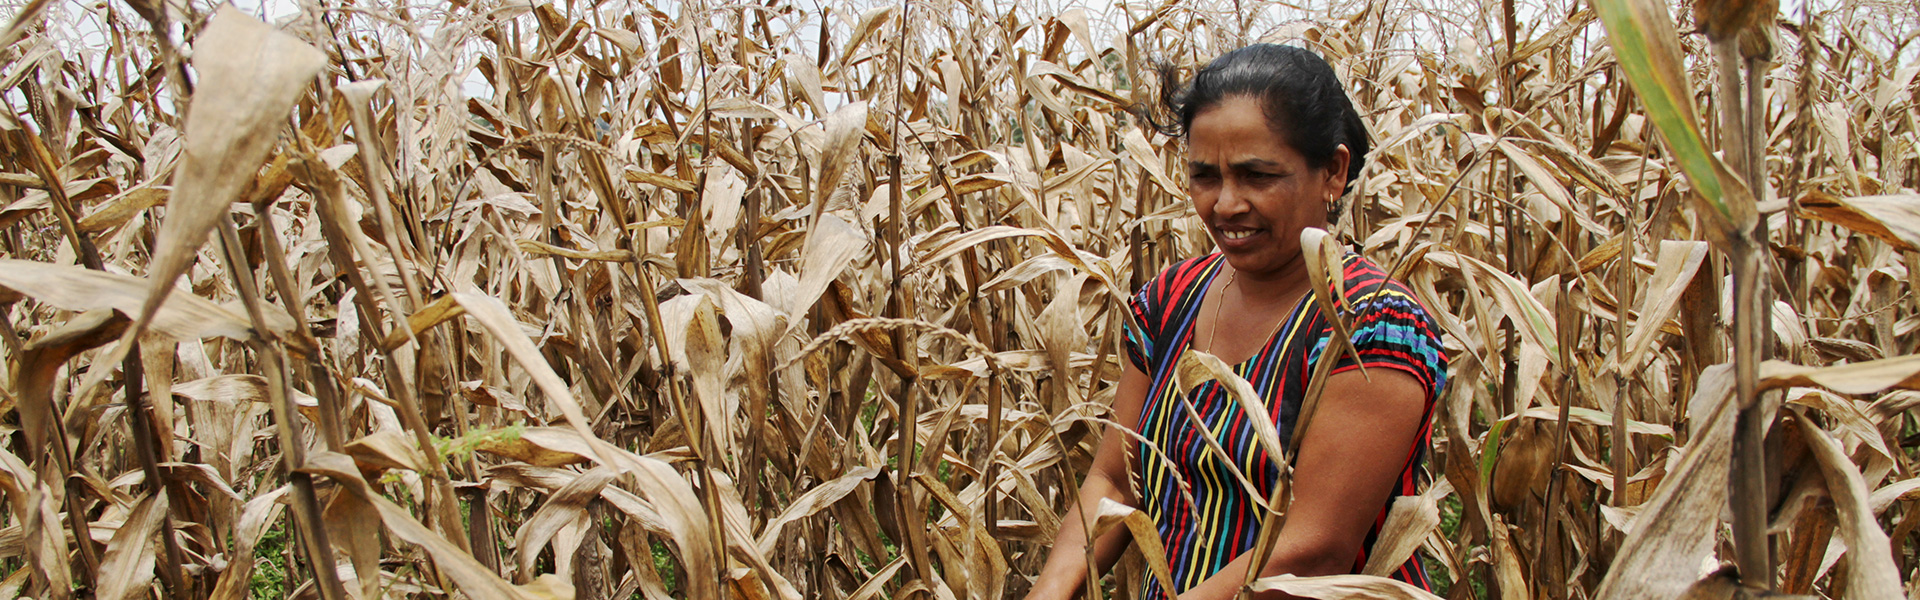 sri-lanka-cbo-corn-field-farmer